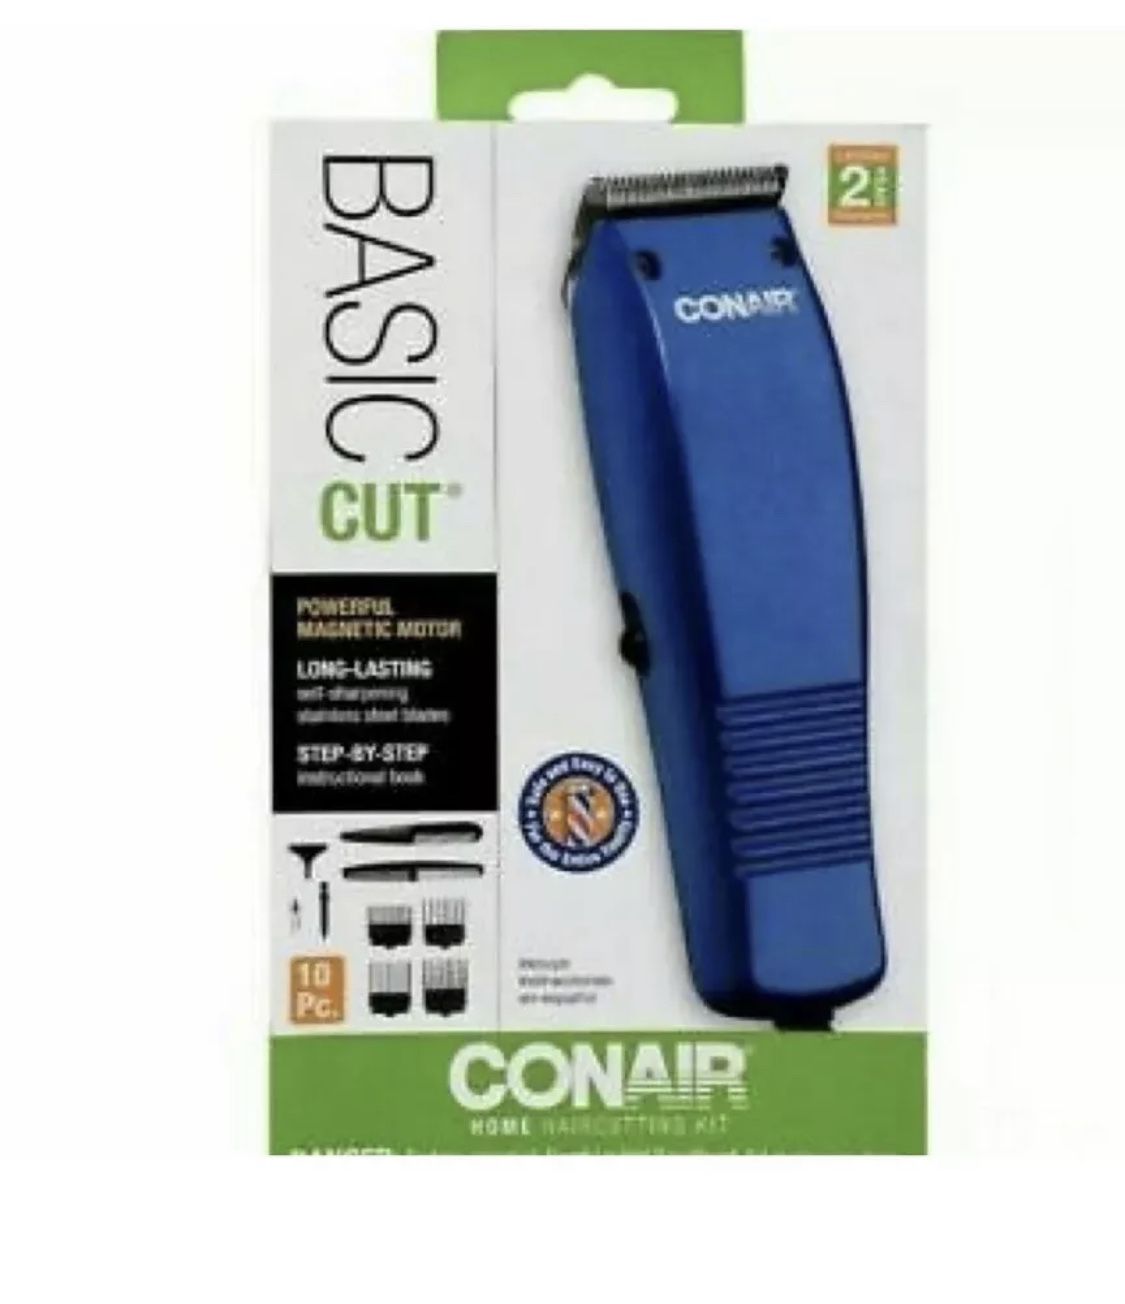 CONAIR Basic Cut Hair Clippers 10 Piece Haircut Kit